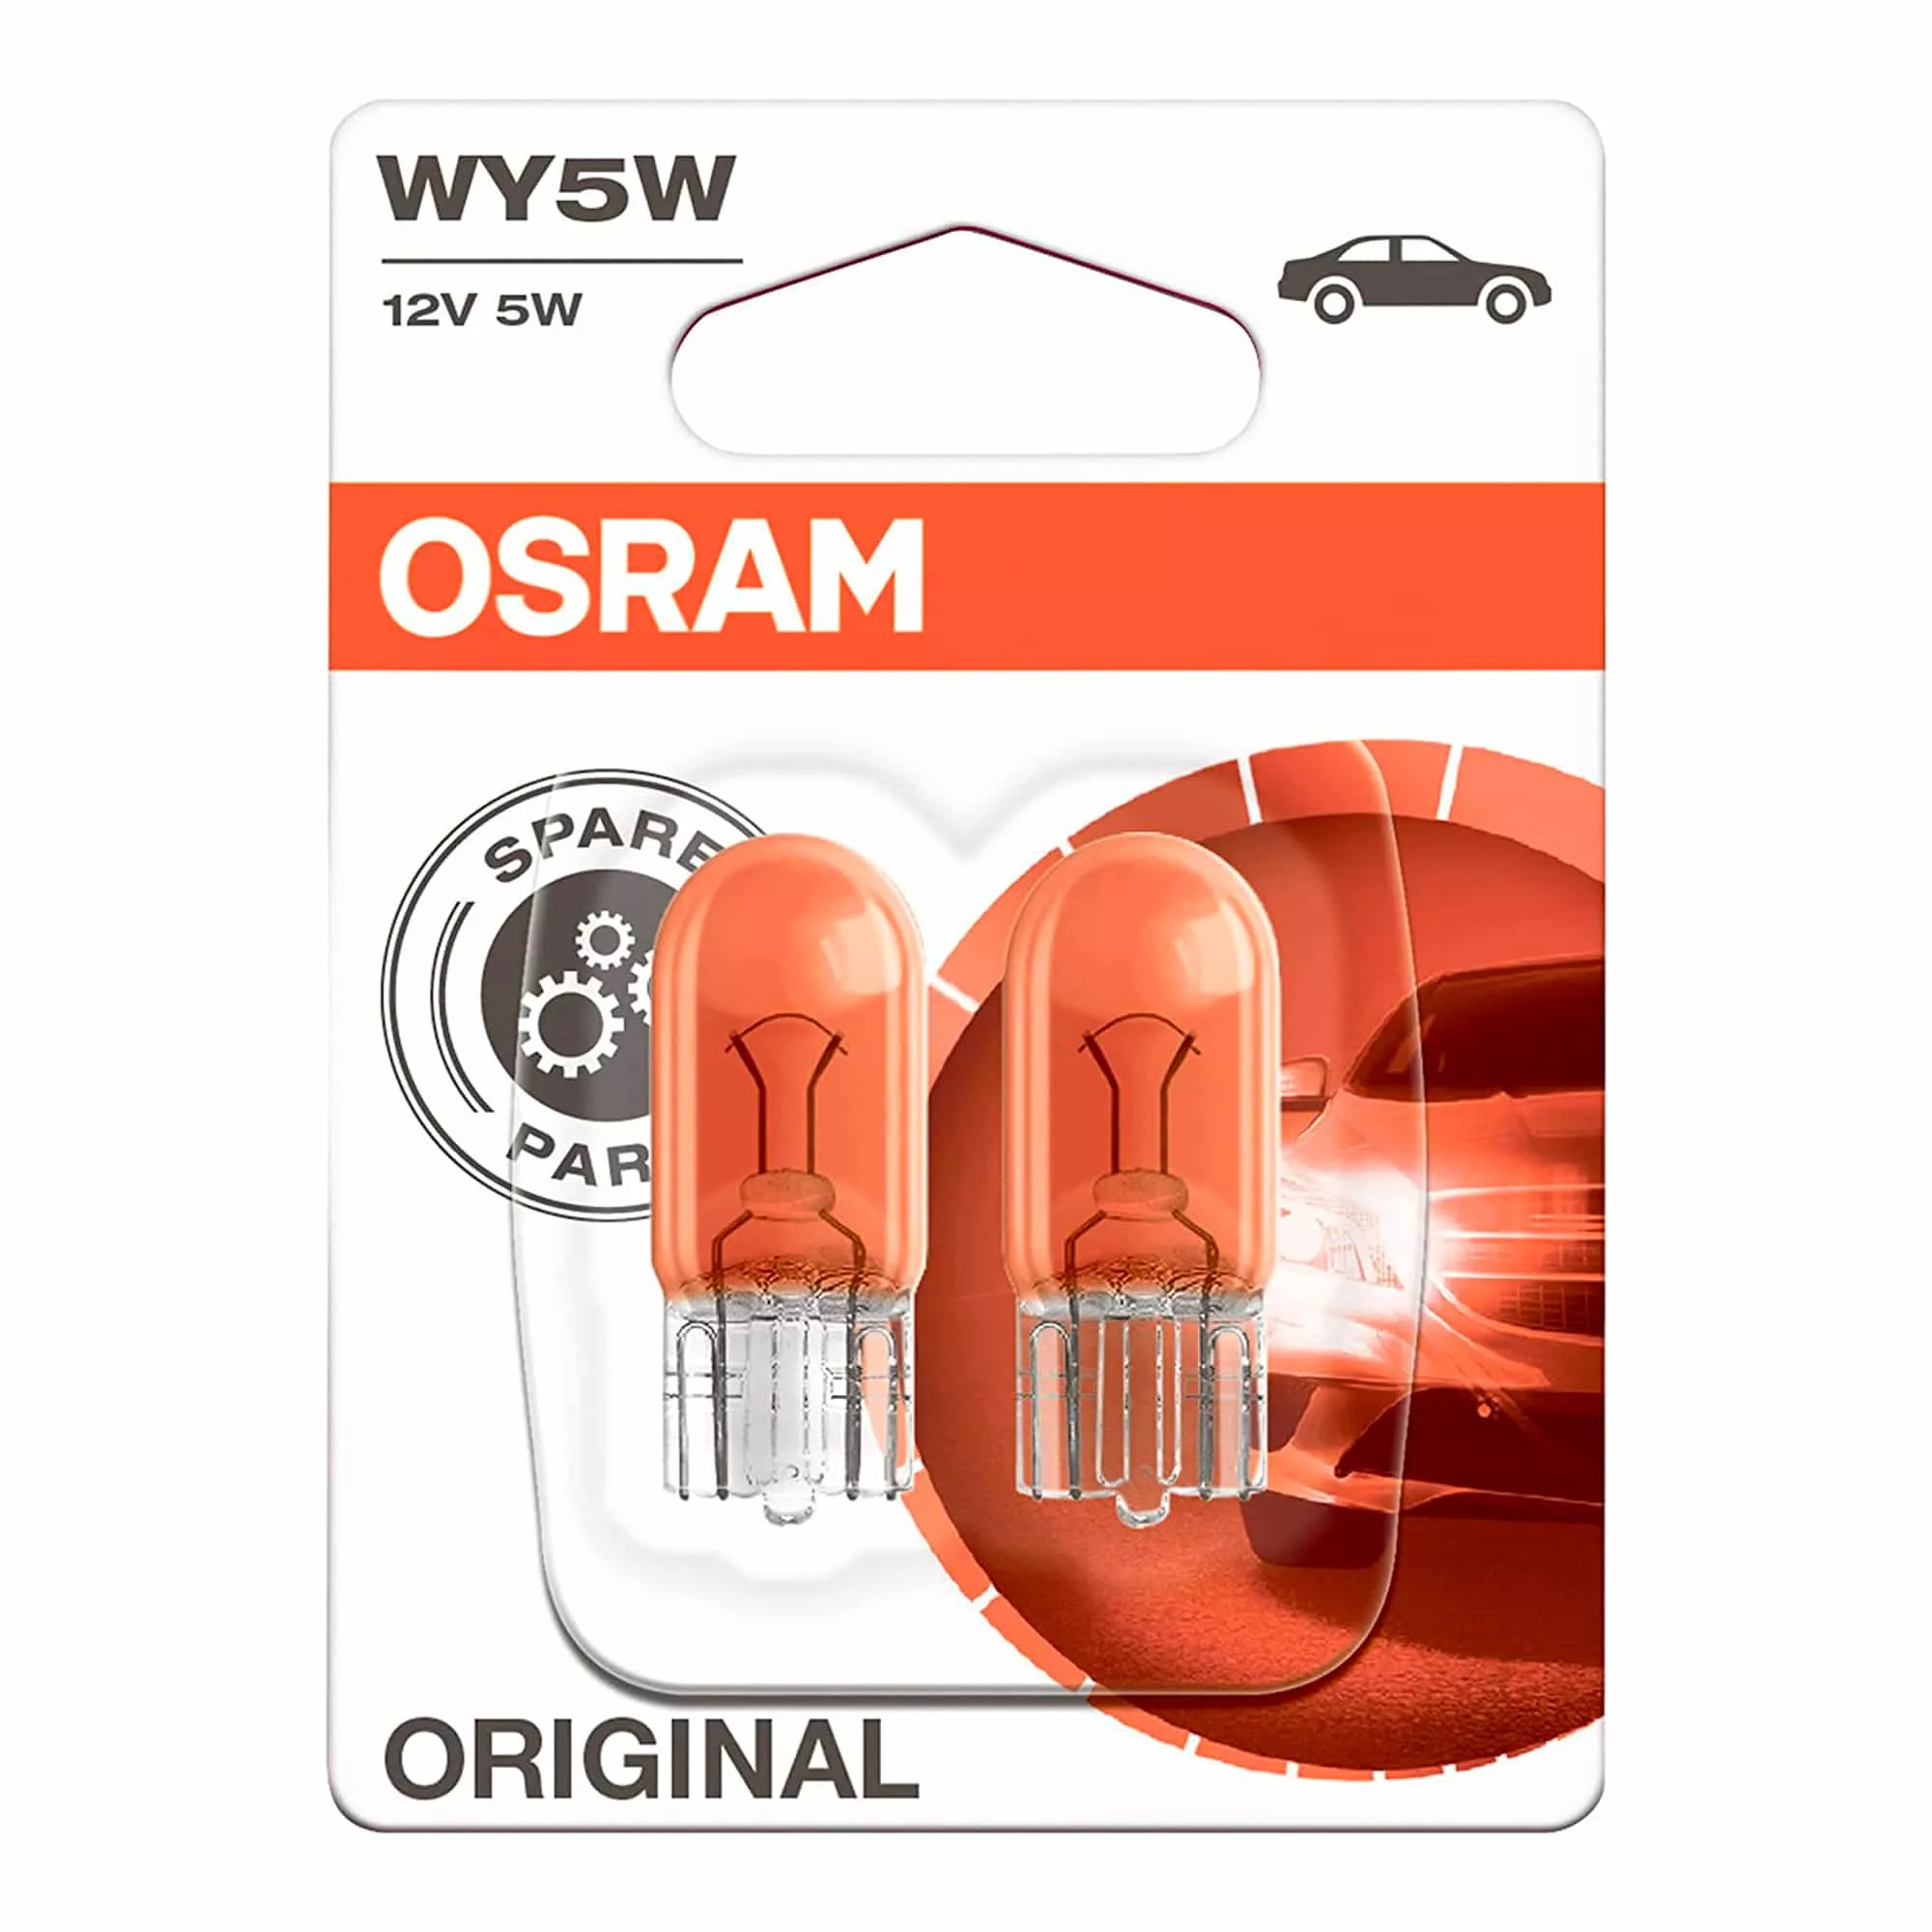 Лампа Osram Original WY5W 12V 5W 2827_02B